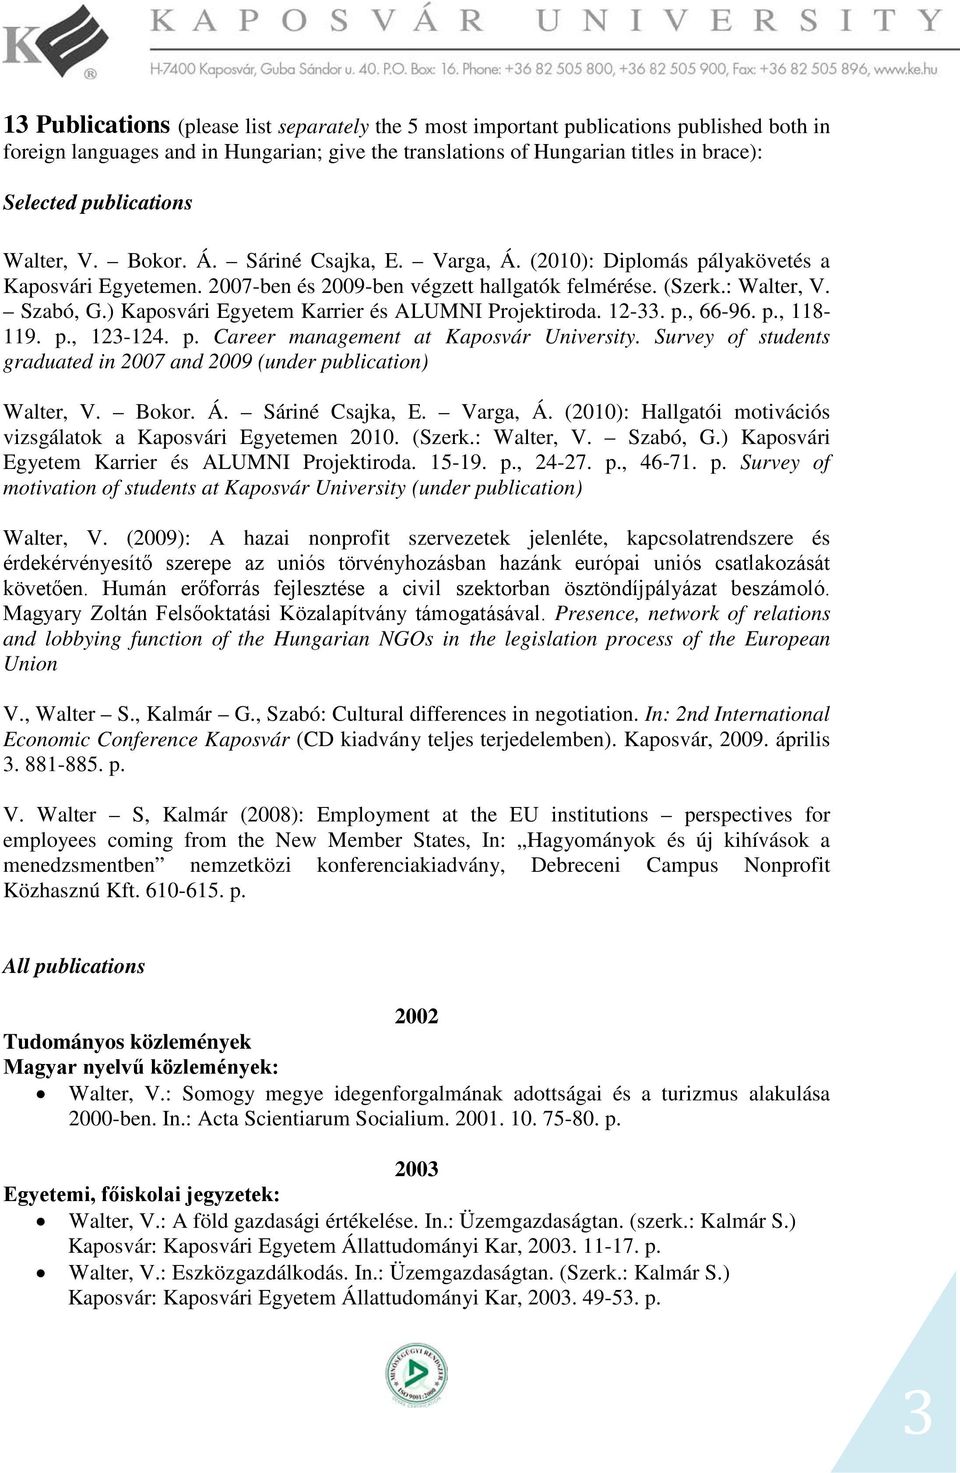 ) Kaposvári Egyetem Karrier és ALUMNI Projektiroda. 12-33. p., 66-96. p., 118-119. p., 123-124. p. Career management at Kaposvár University.